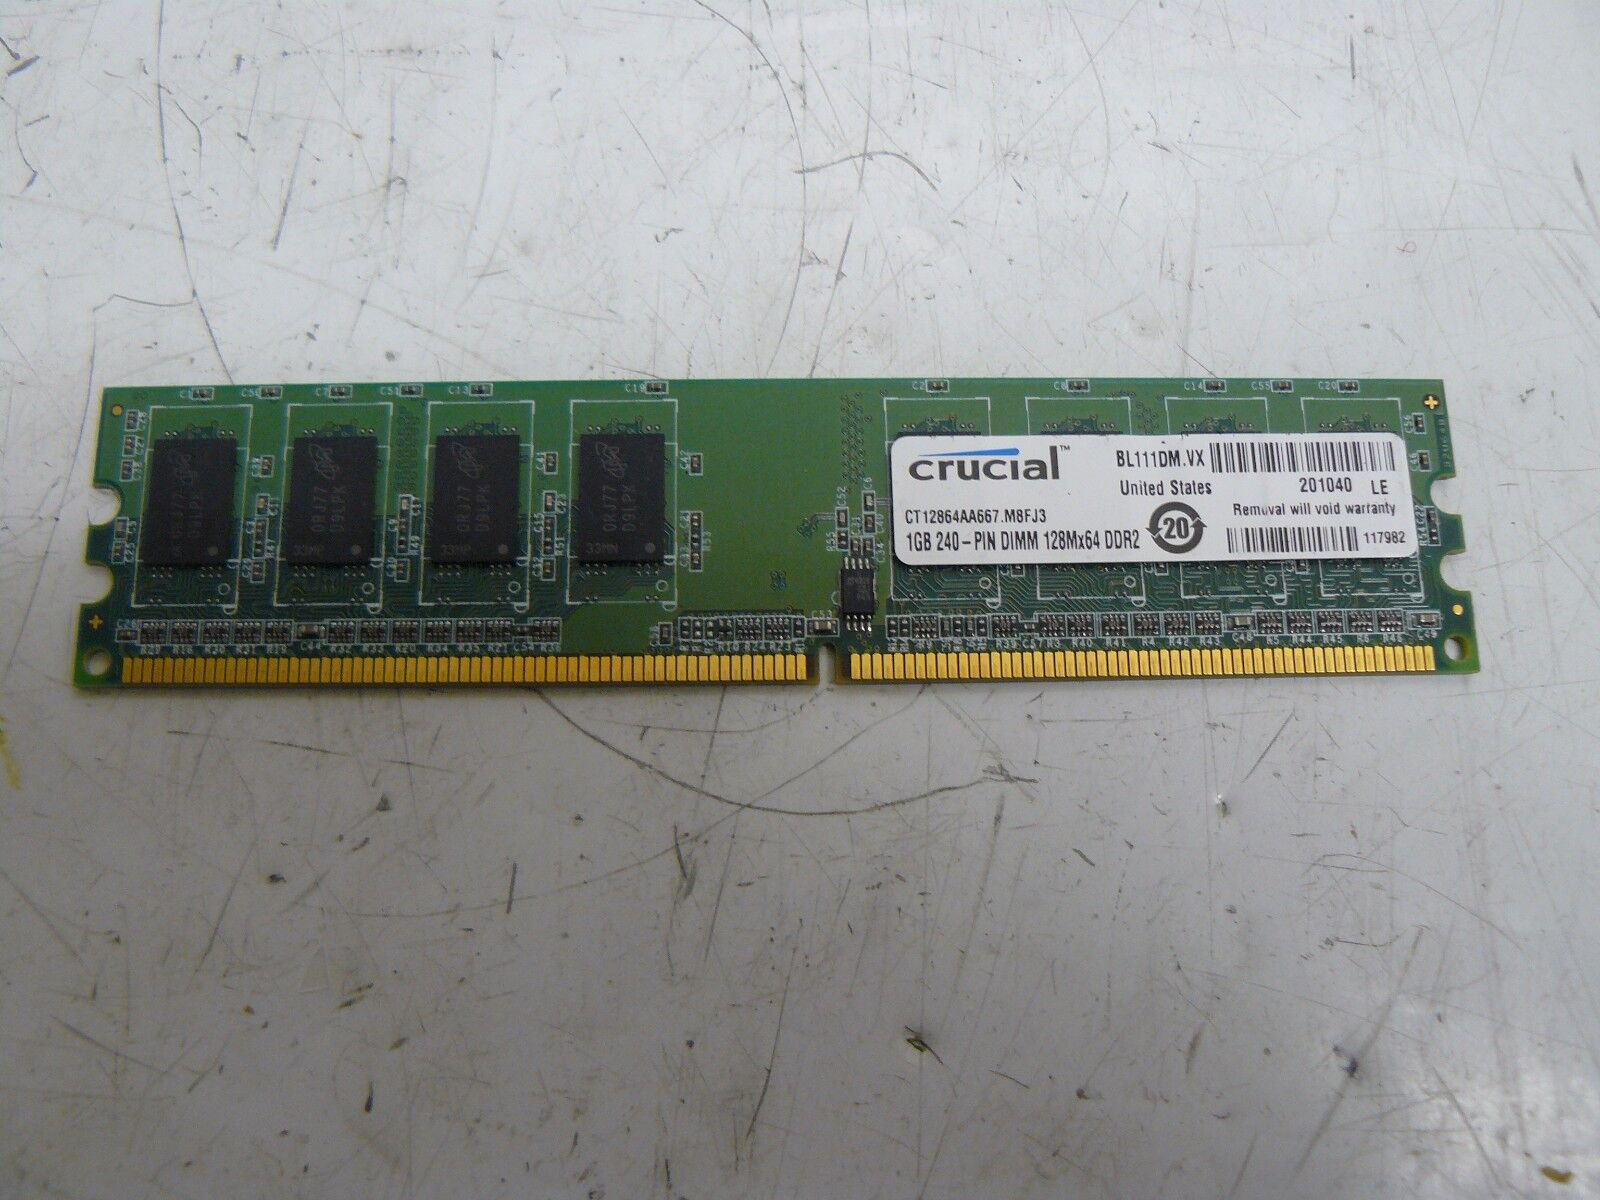 CRUCIAL CT12864AA667.M8FJ3 1 GB 240-PIN DIMM 128MX64 DDR2 MEMORY CARD BL111DM.VX